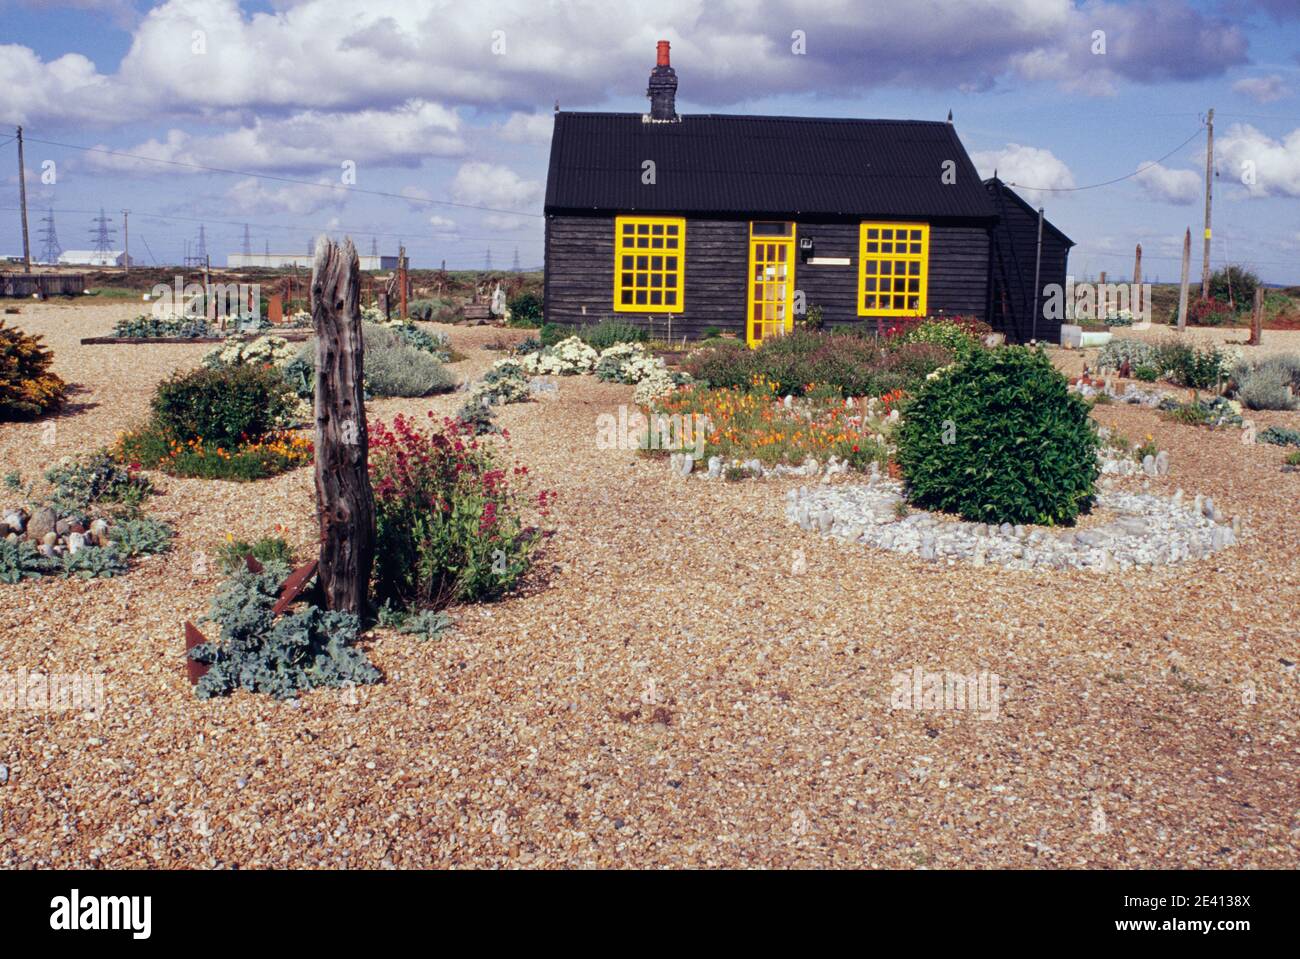 Derek jarman (d metà degli anni '90) casa su spiaggia di ghiaia, malga nera, vernice gialla, giardino di oggetti trovati e pianta resistente al sale, dunge Foto Stock